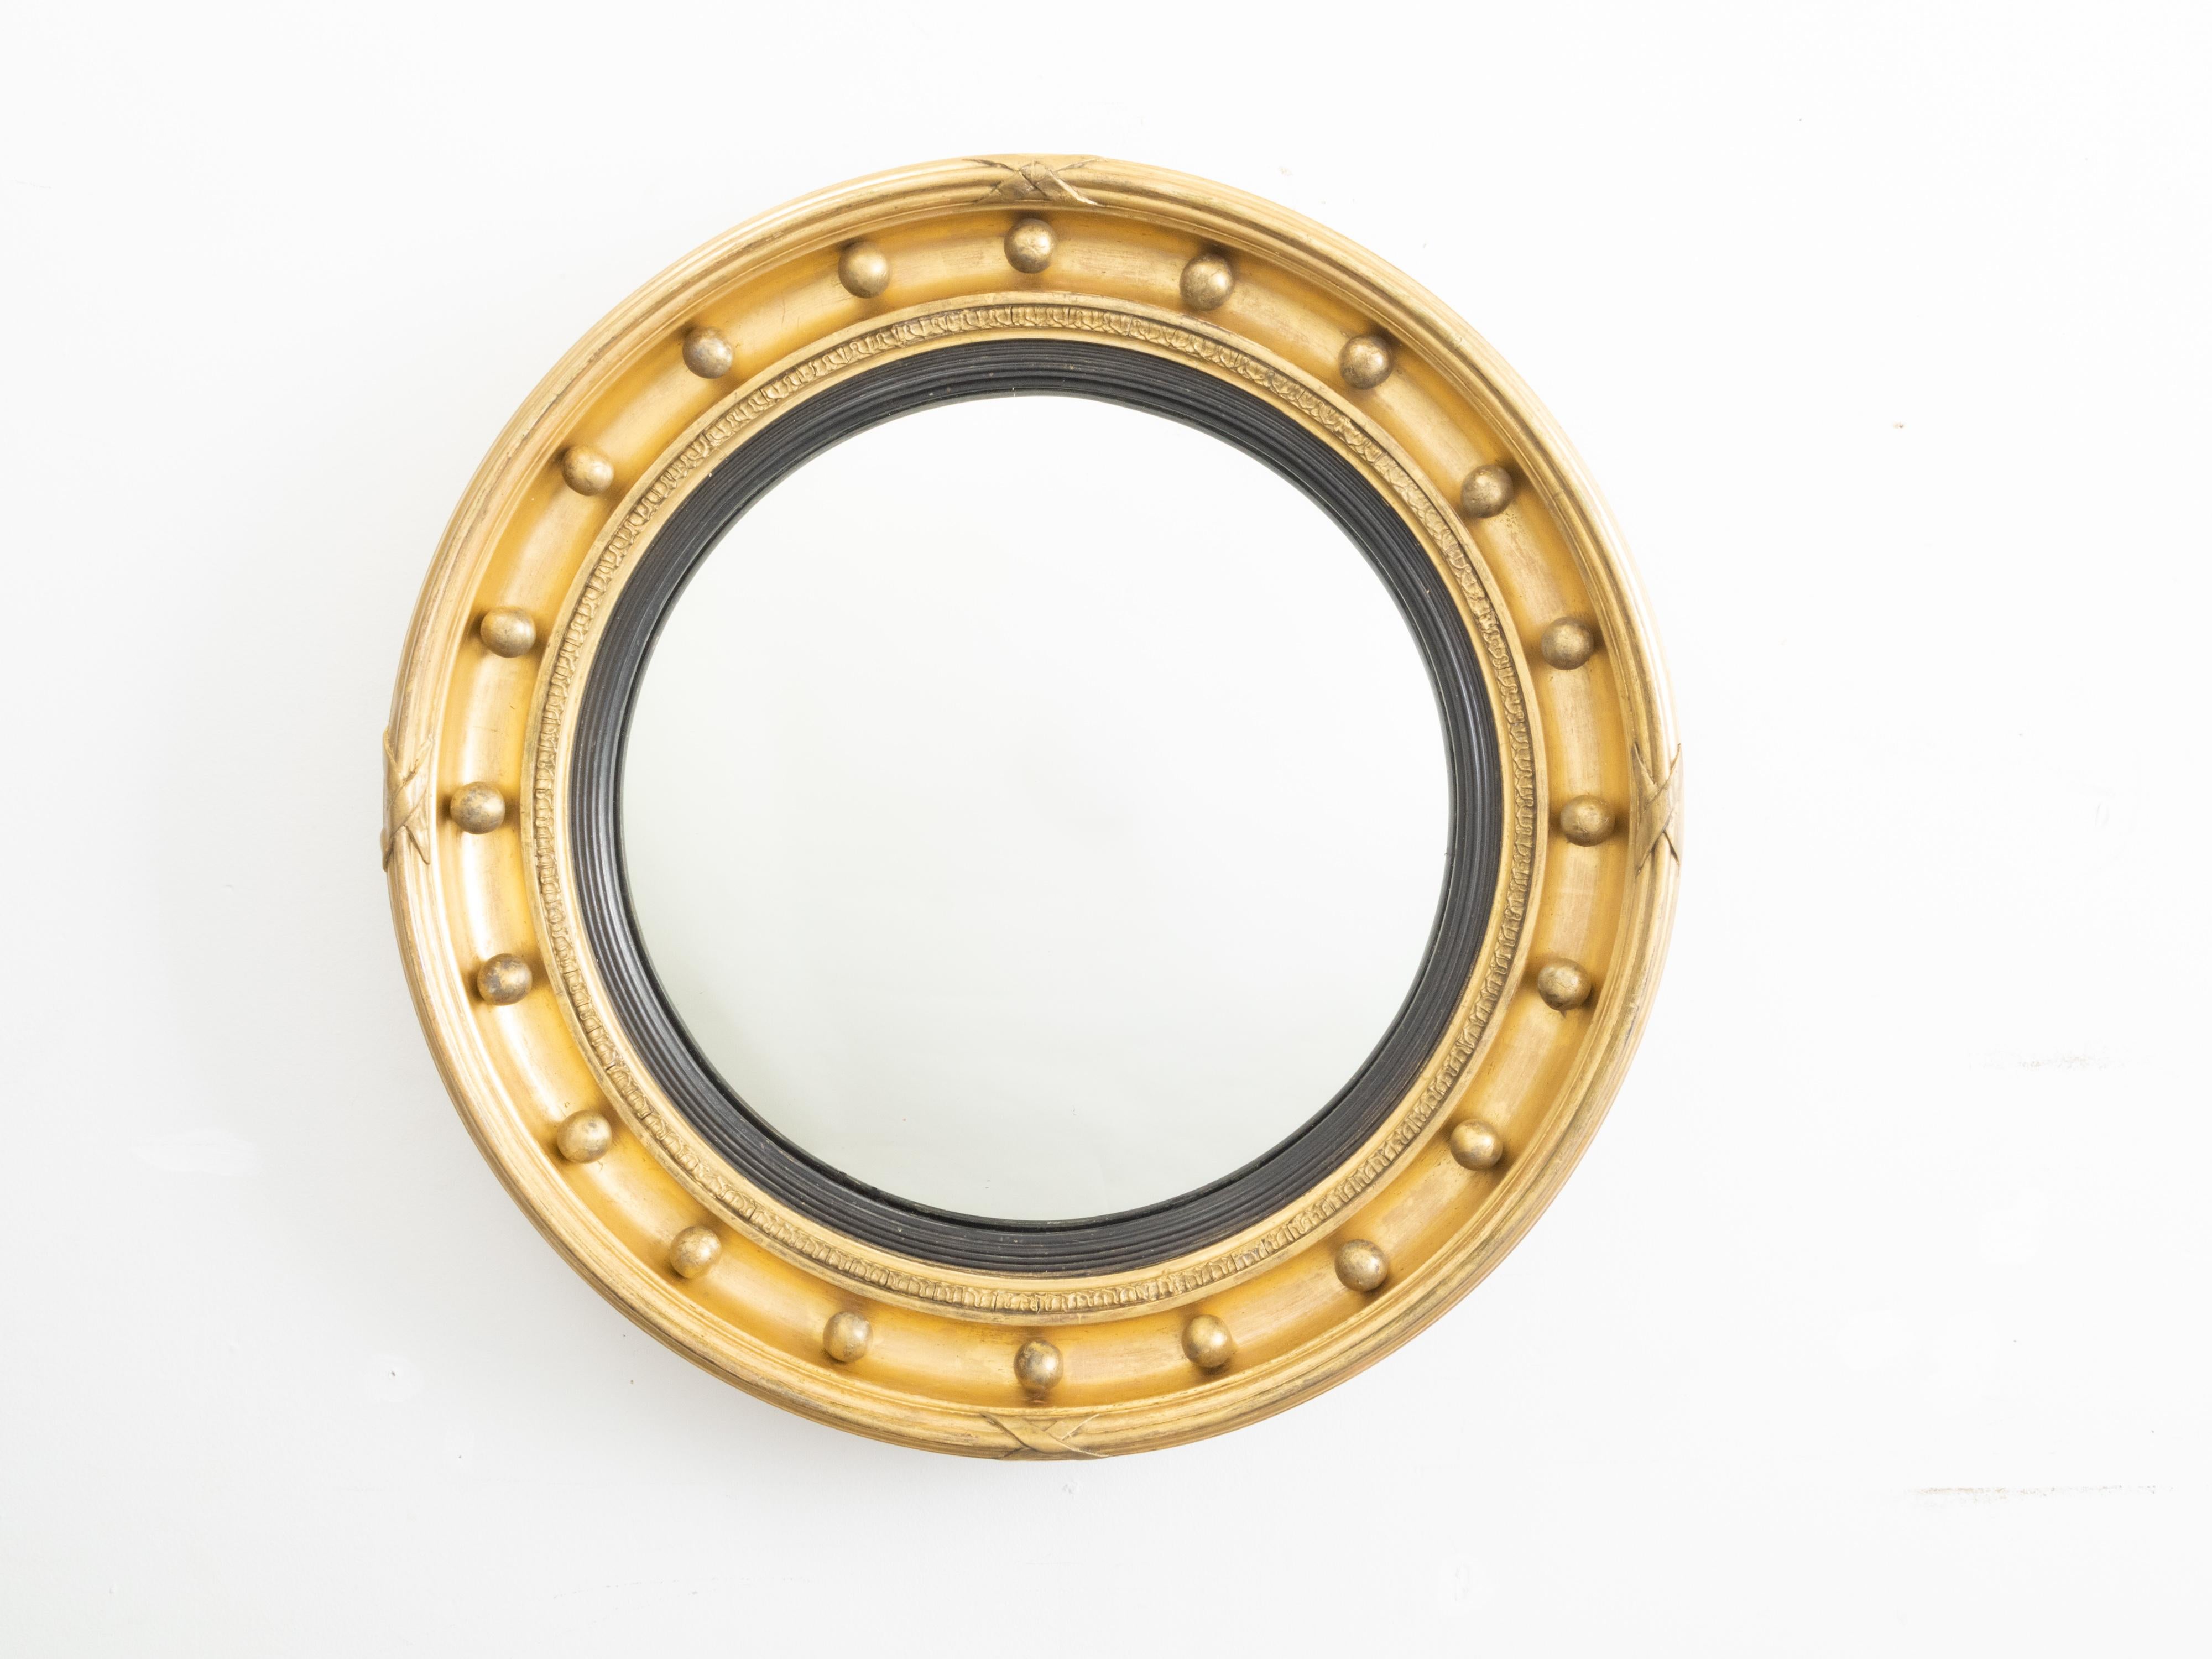 Petit miroir girandole anglais en bois doré du 19ème siècle avec des accents ébonisés et cannelés. Créé en Angleterre au cours du XIXe siècle, cet élégant miroir circulaire présente une plaque centrale entourée d'une moulure à cannelures en bois